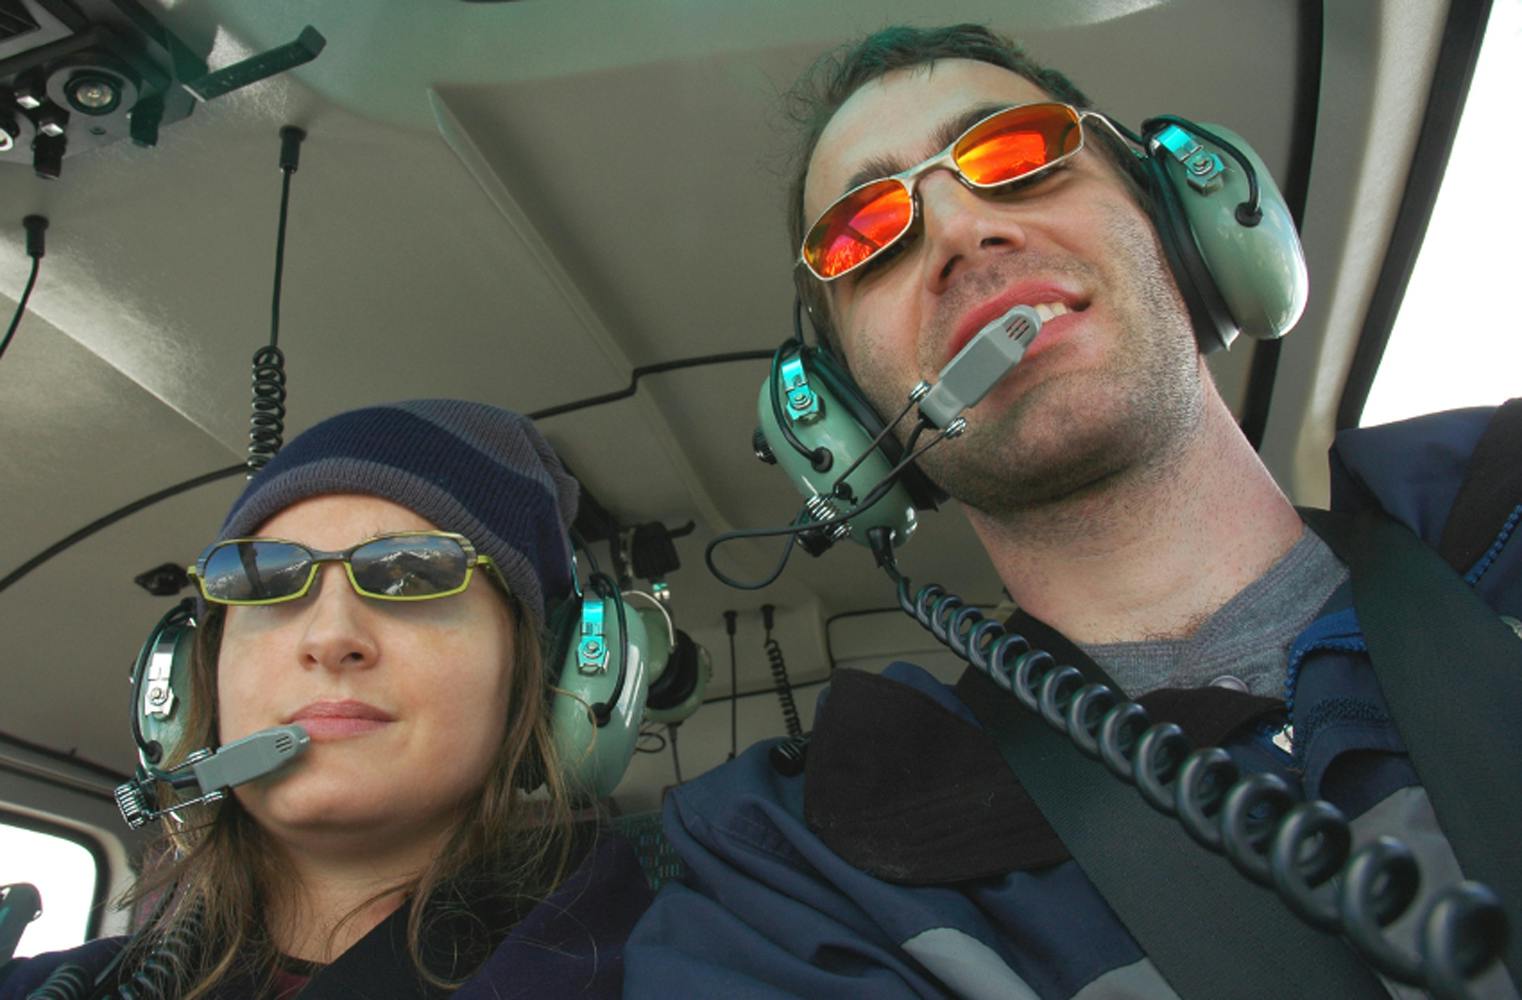 Romantischer Rundflug | Hubschrauber exklusiv für 2 | 60 Min